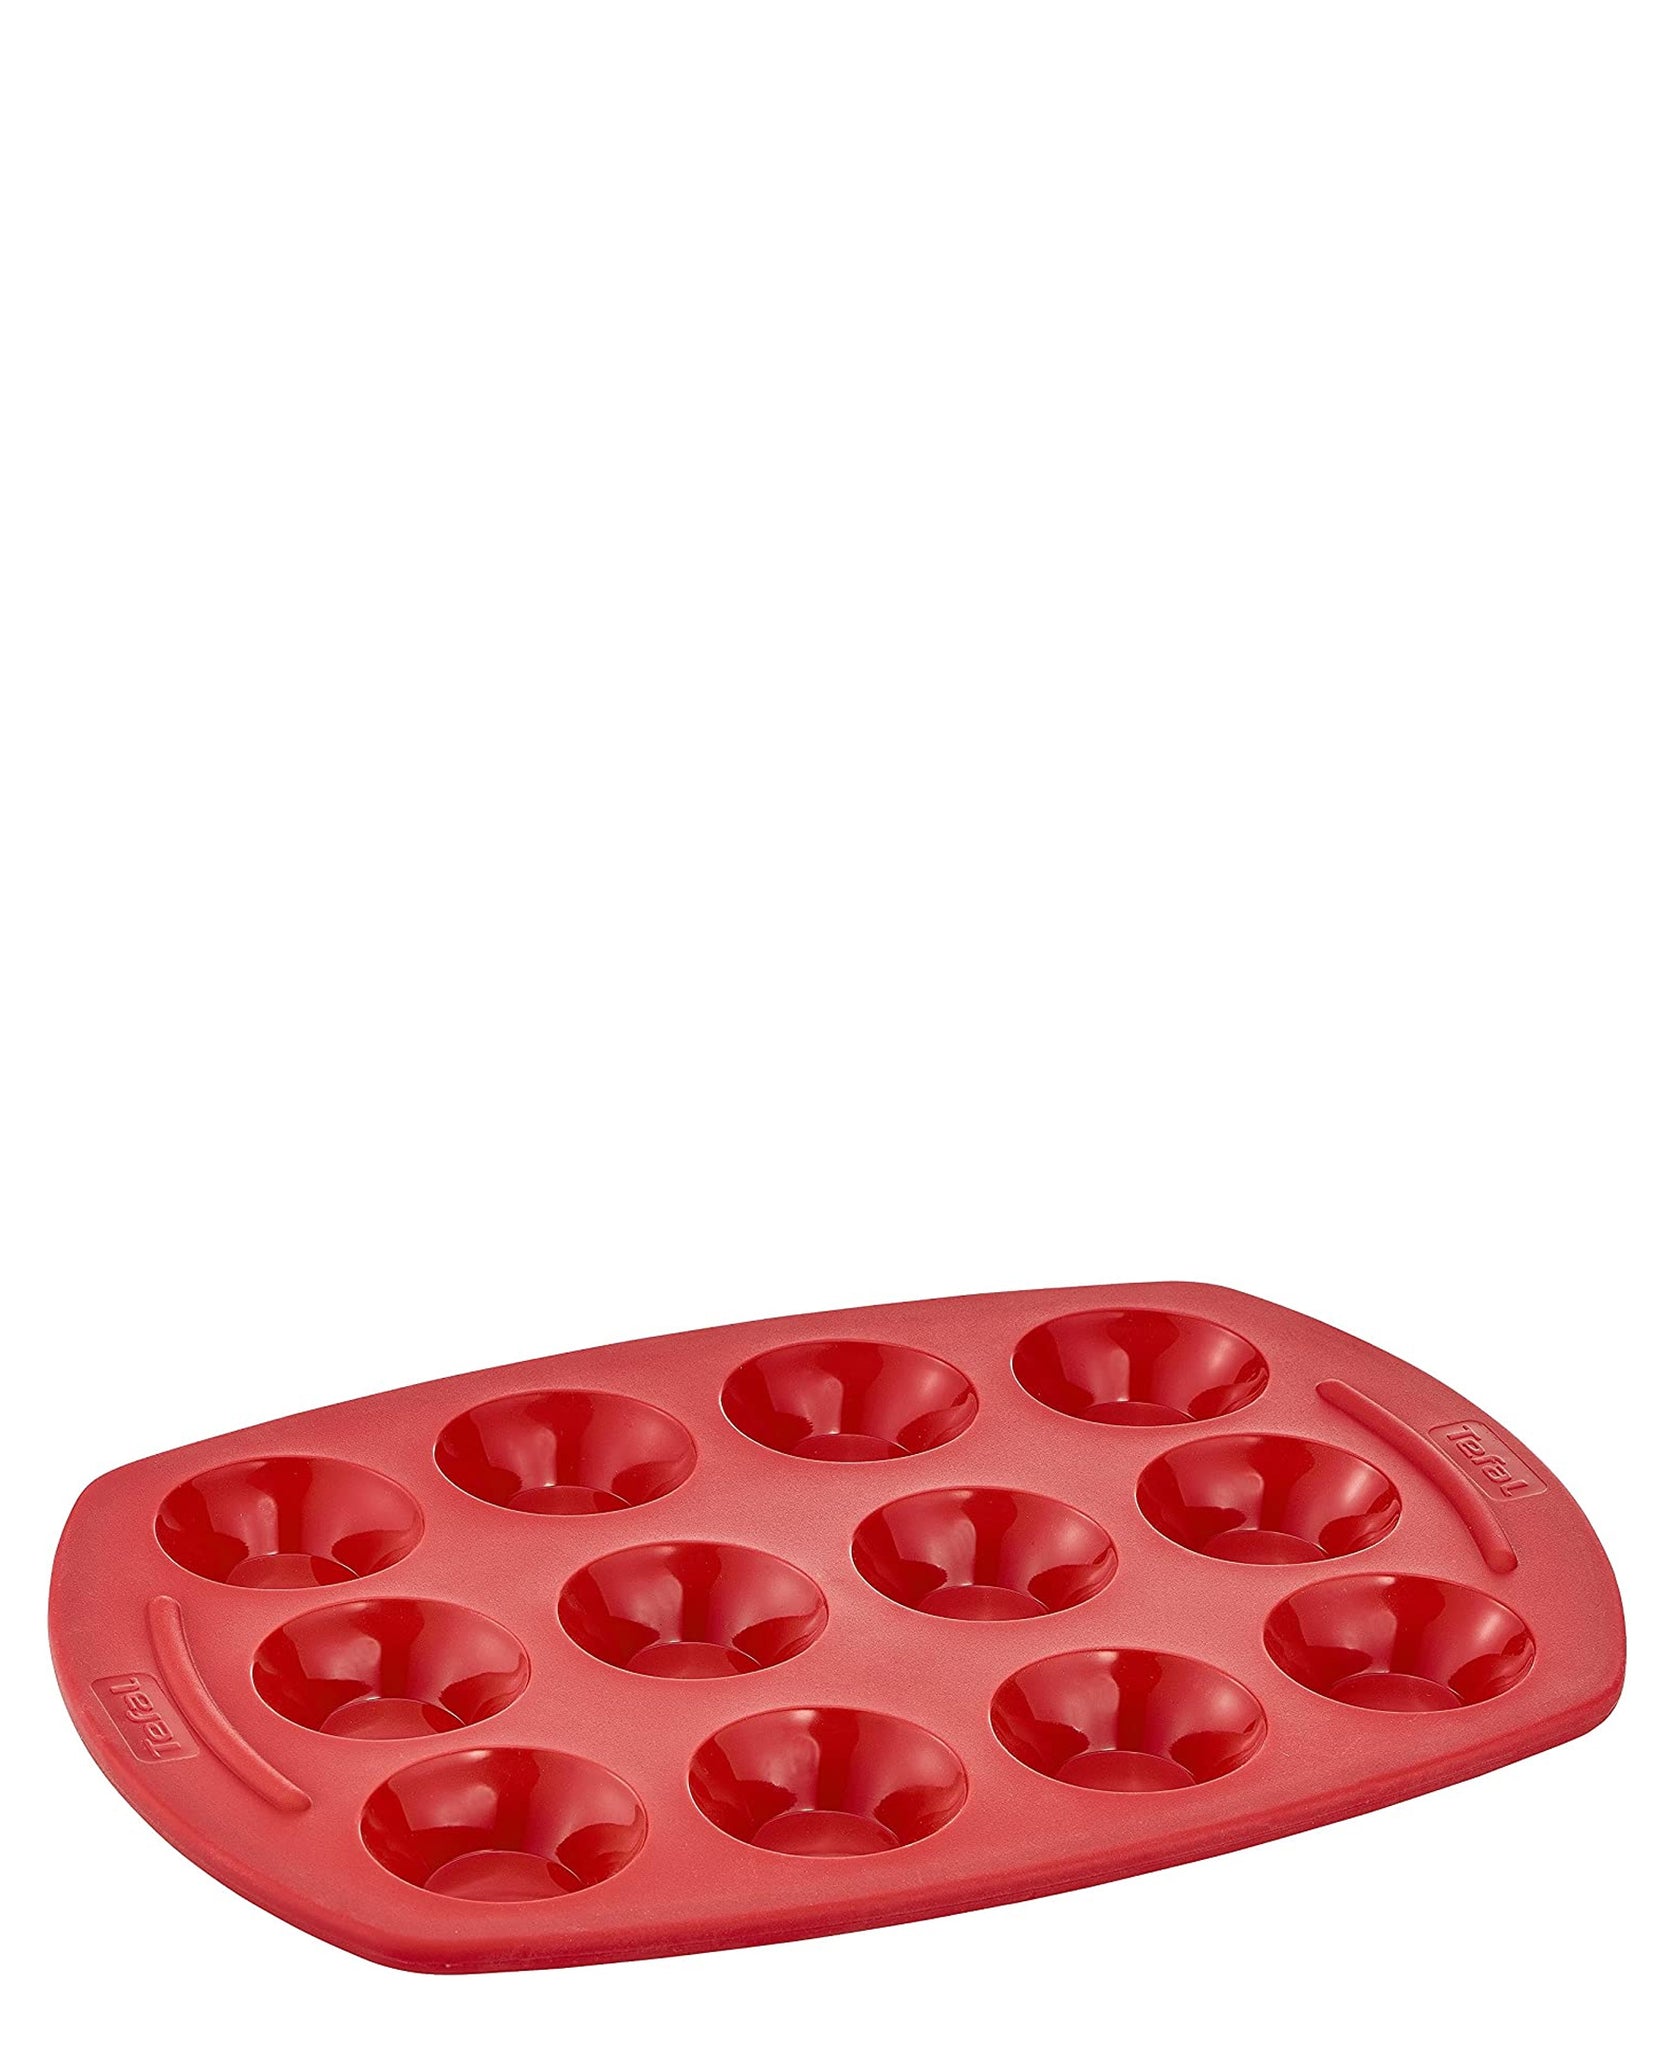 Tefal Mini Tartlets Mould - Red